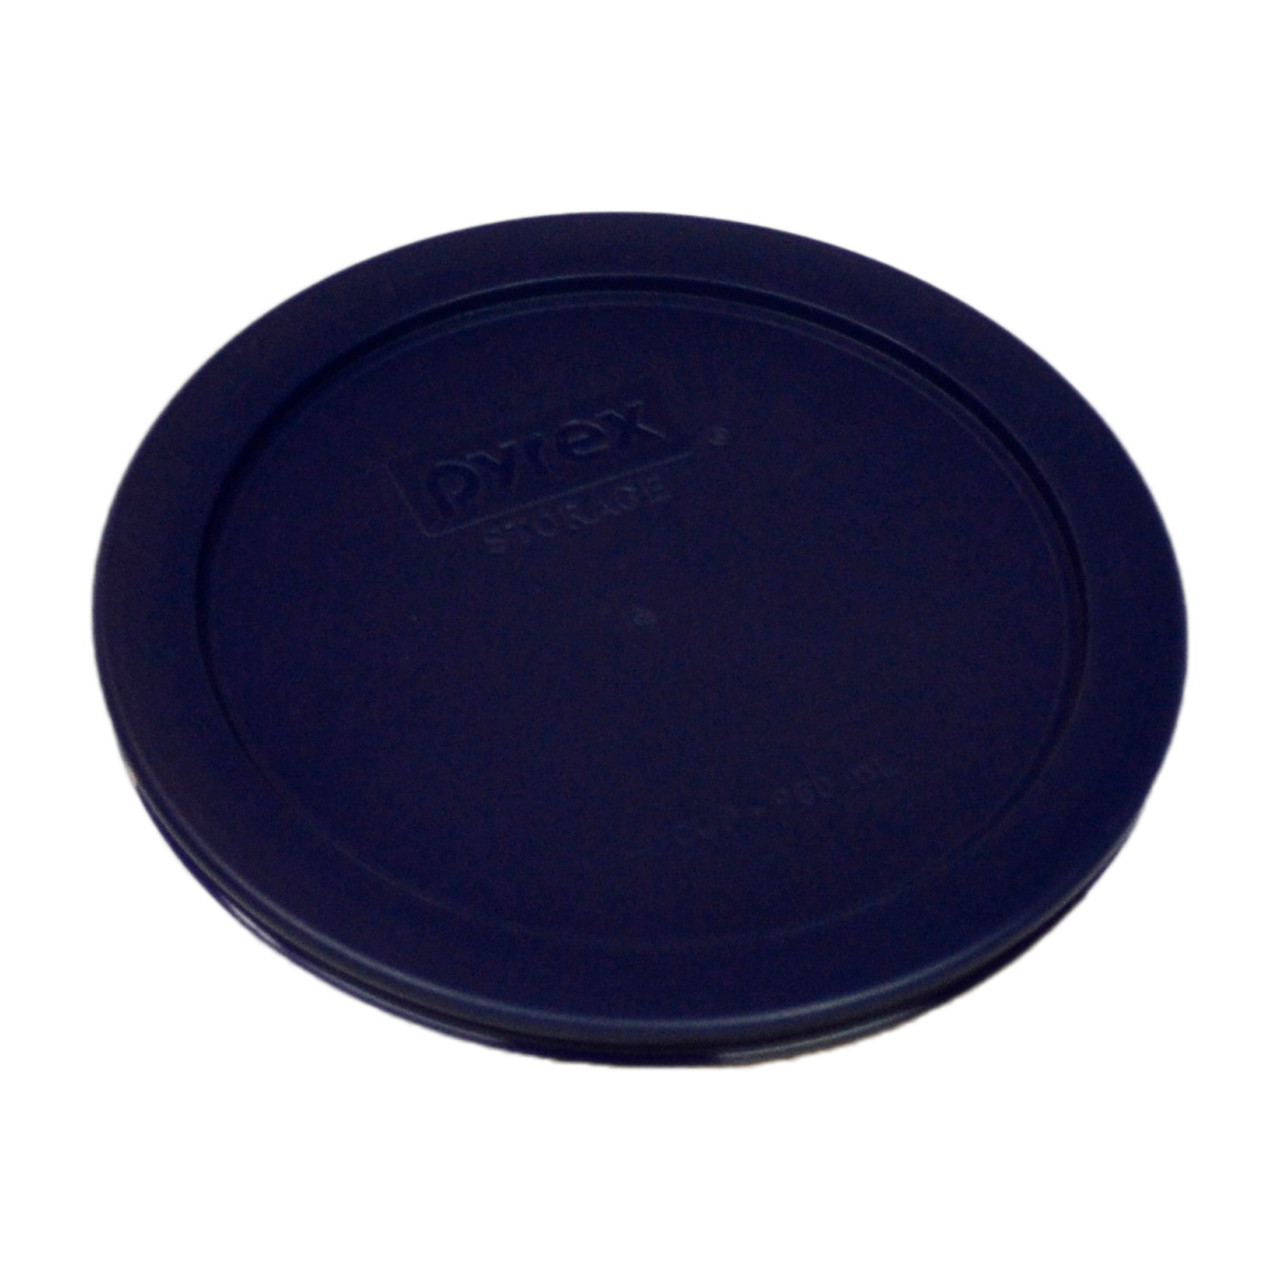 Pyrex 7201 4-Cup Glass Food Storage Bowl w/ 7201-PC Marine Blue